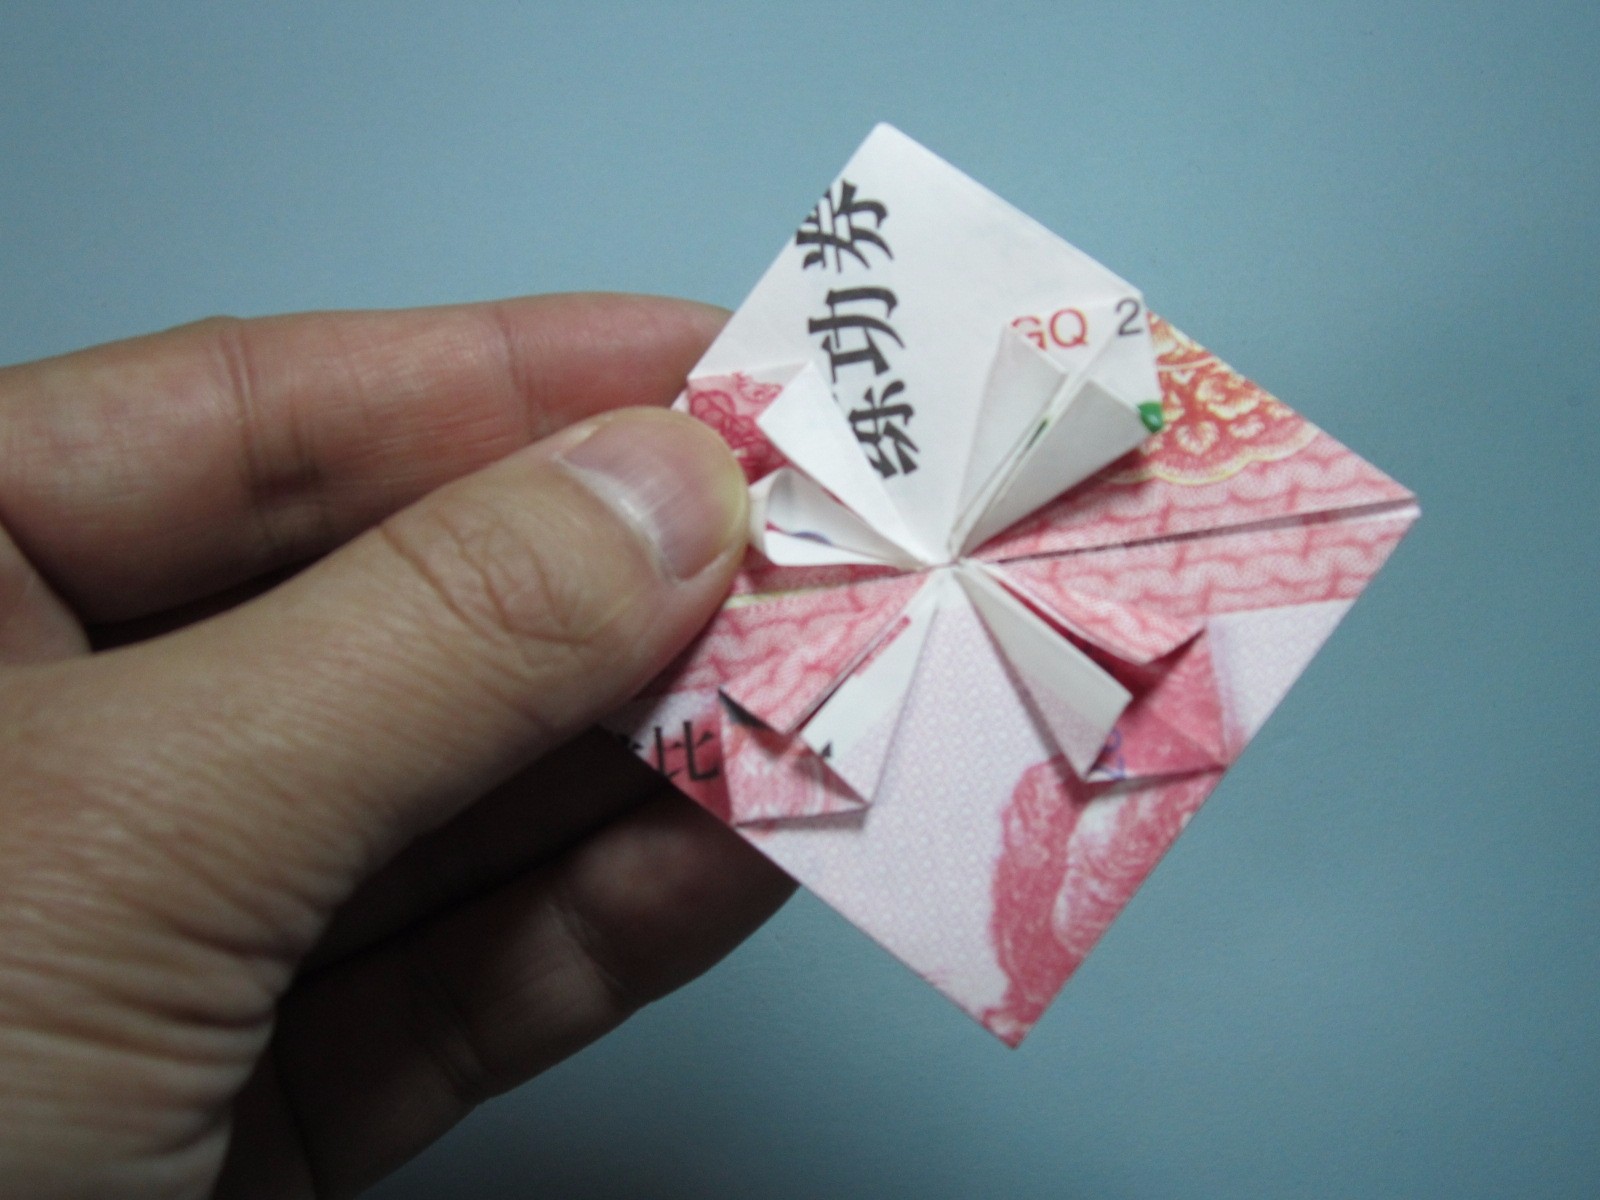 用人民币折纸爱心详细图解放在钱包里的爱心